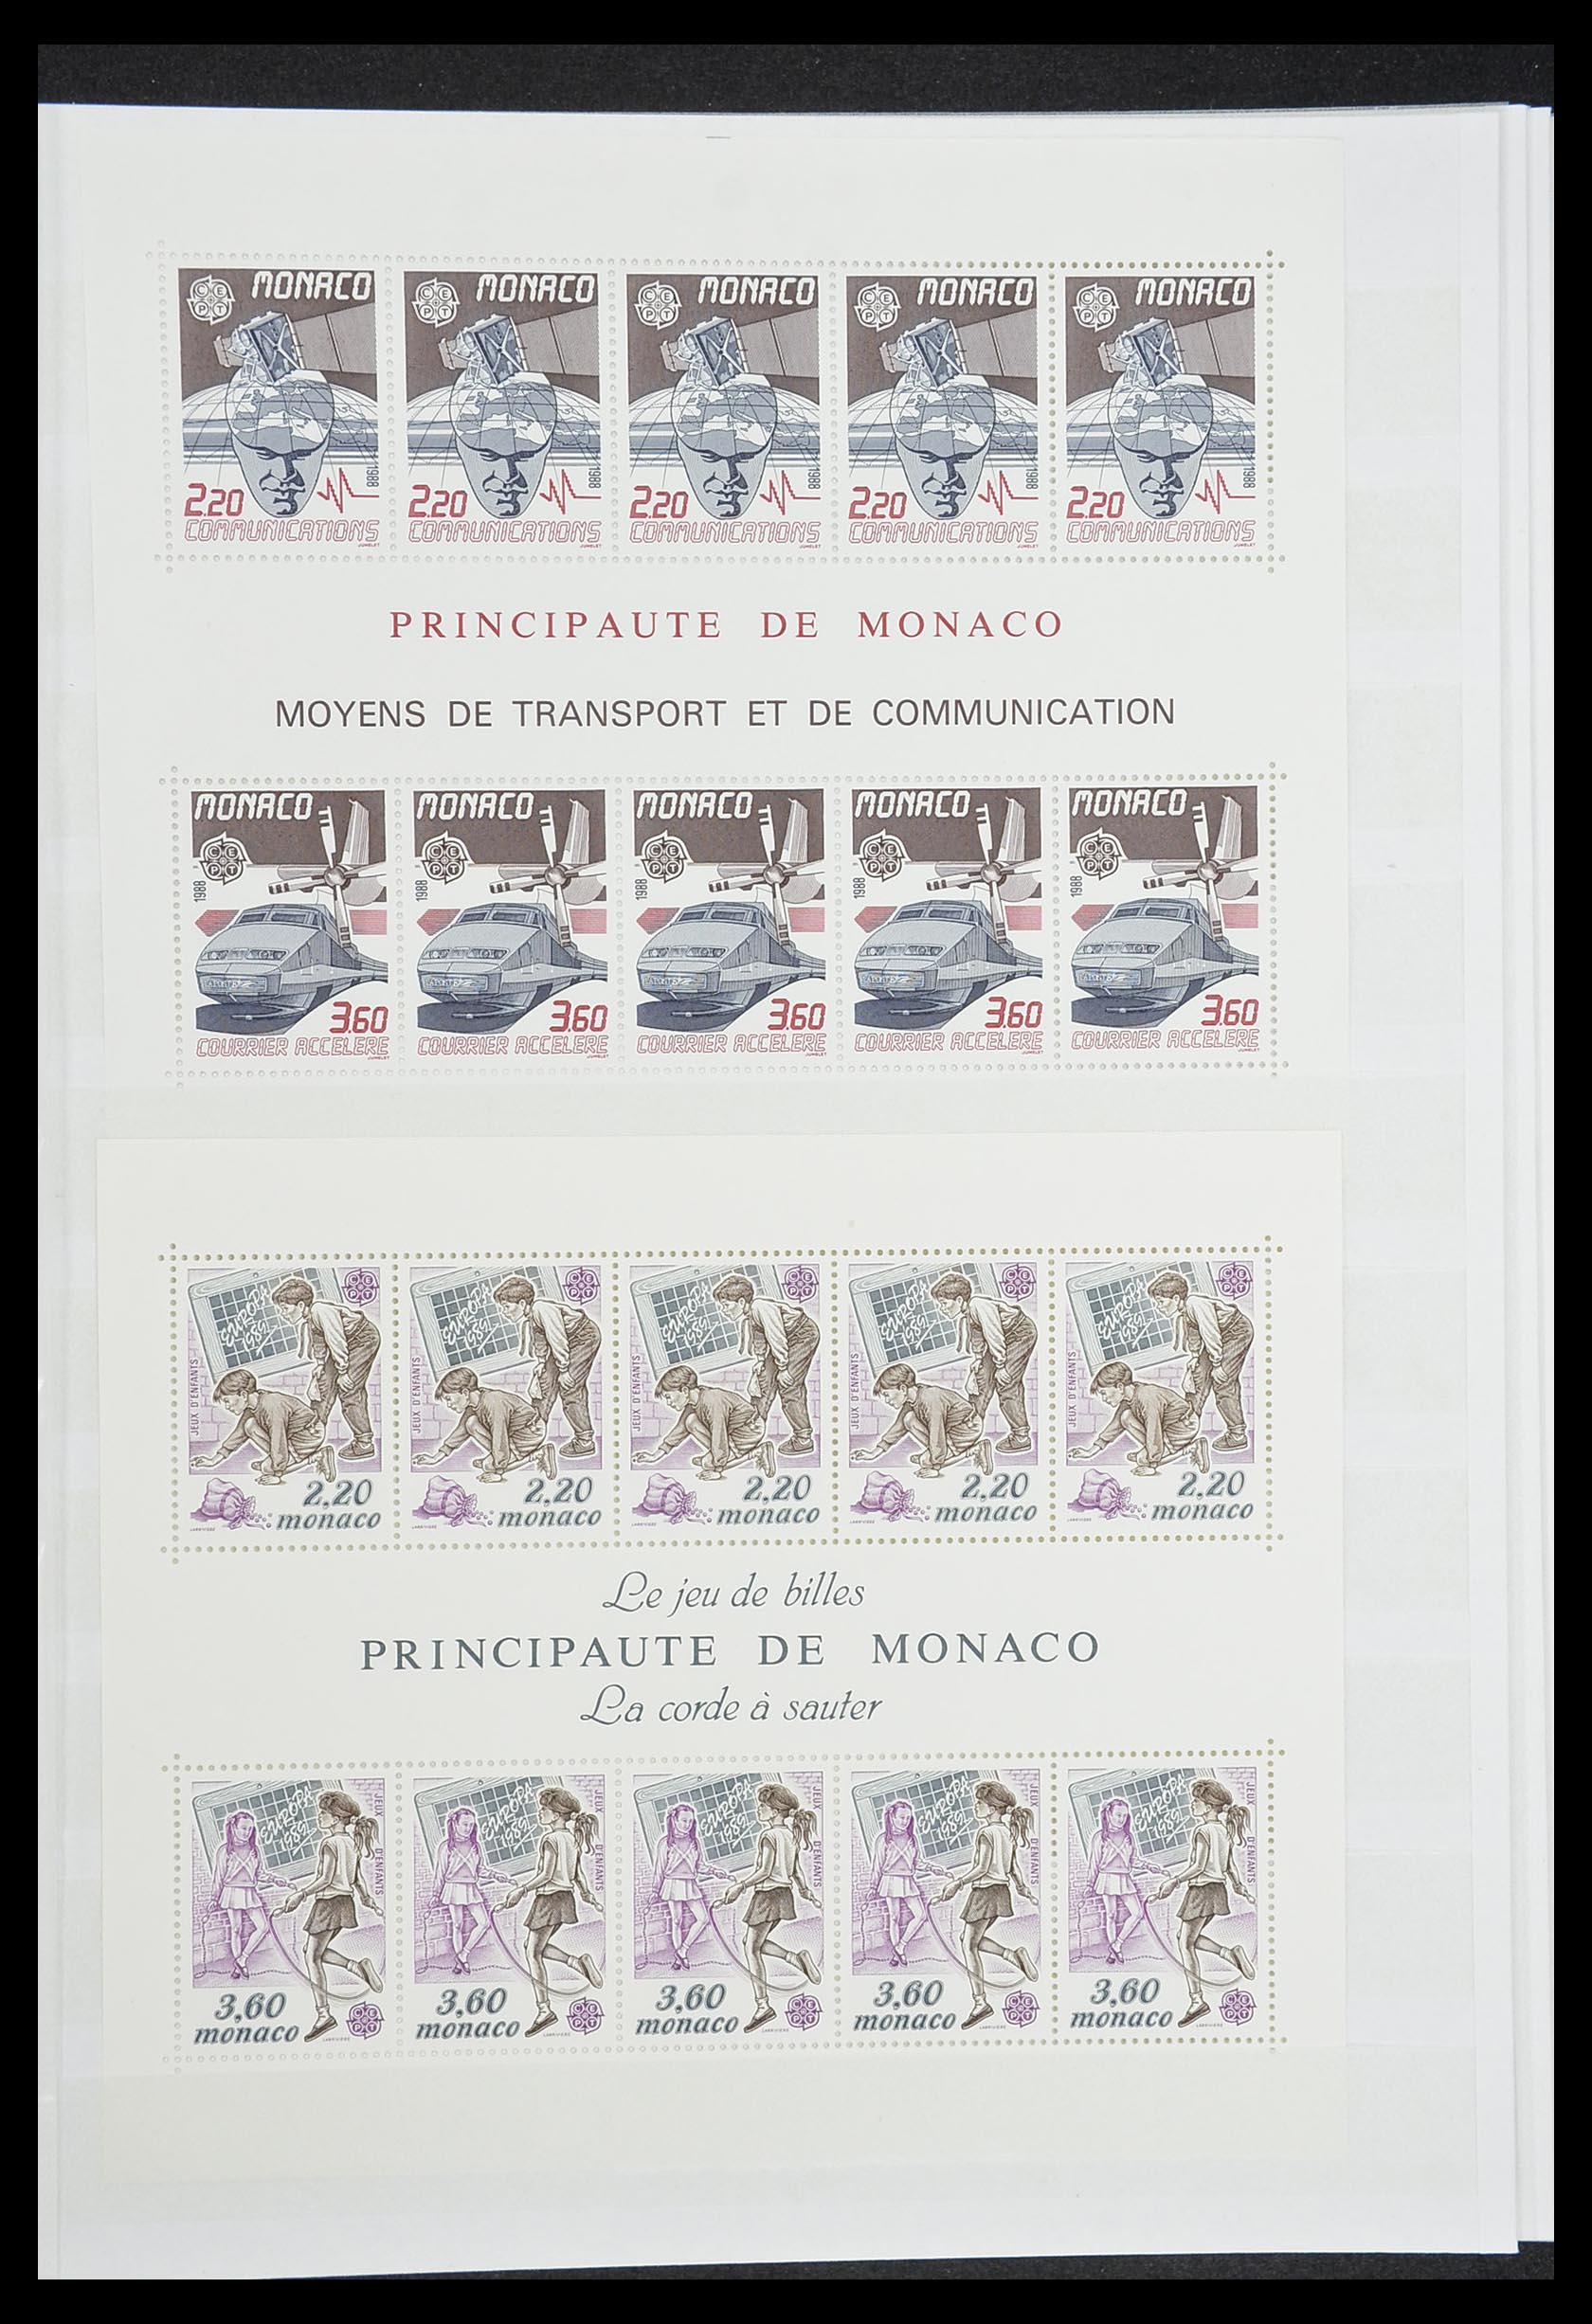 33833 009 - Stamp collection 33833 Monaco souvenir sheets 1979-2015.